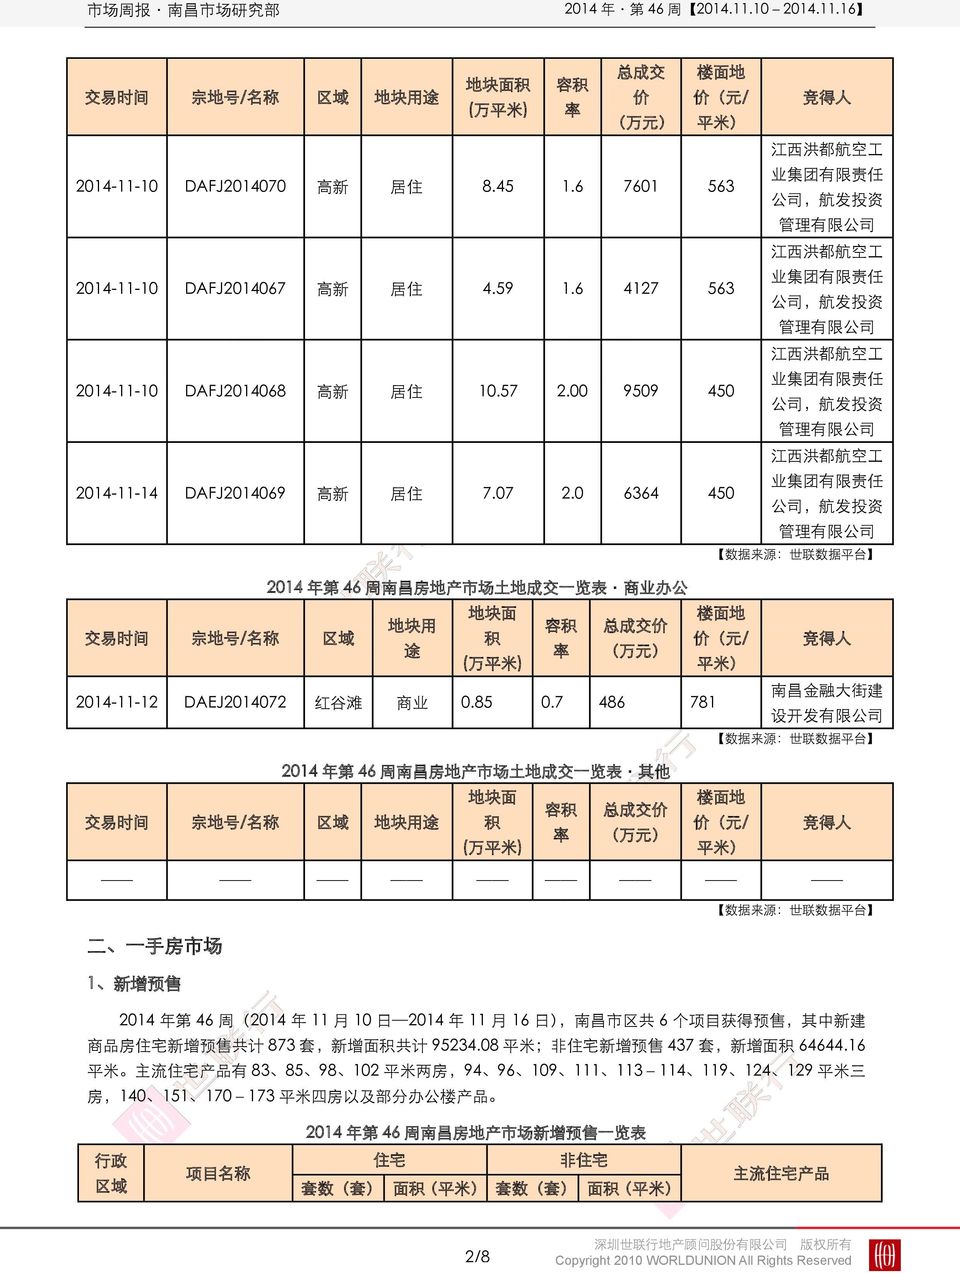 959 45 江 西 洪 都 航 空 工 业 集 团 有 限 责 任 公 司, 航 发 投 资 管 理 有 限 公 司 214-11-14 DAFJ21469 高 新 居 住 7.7 2.